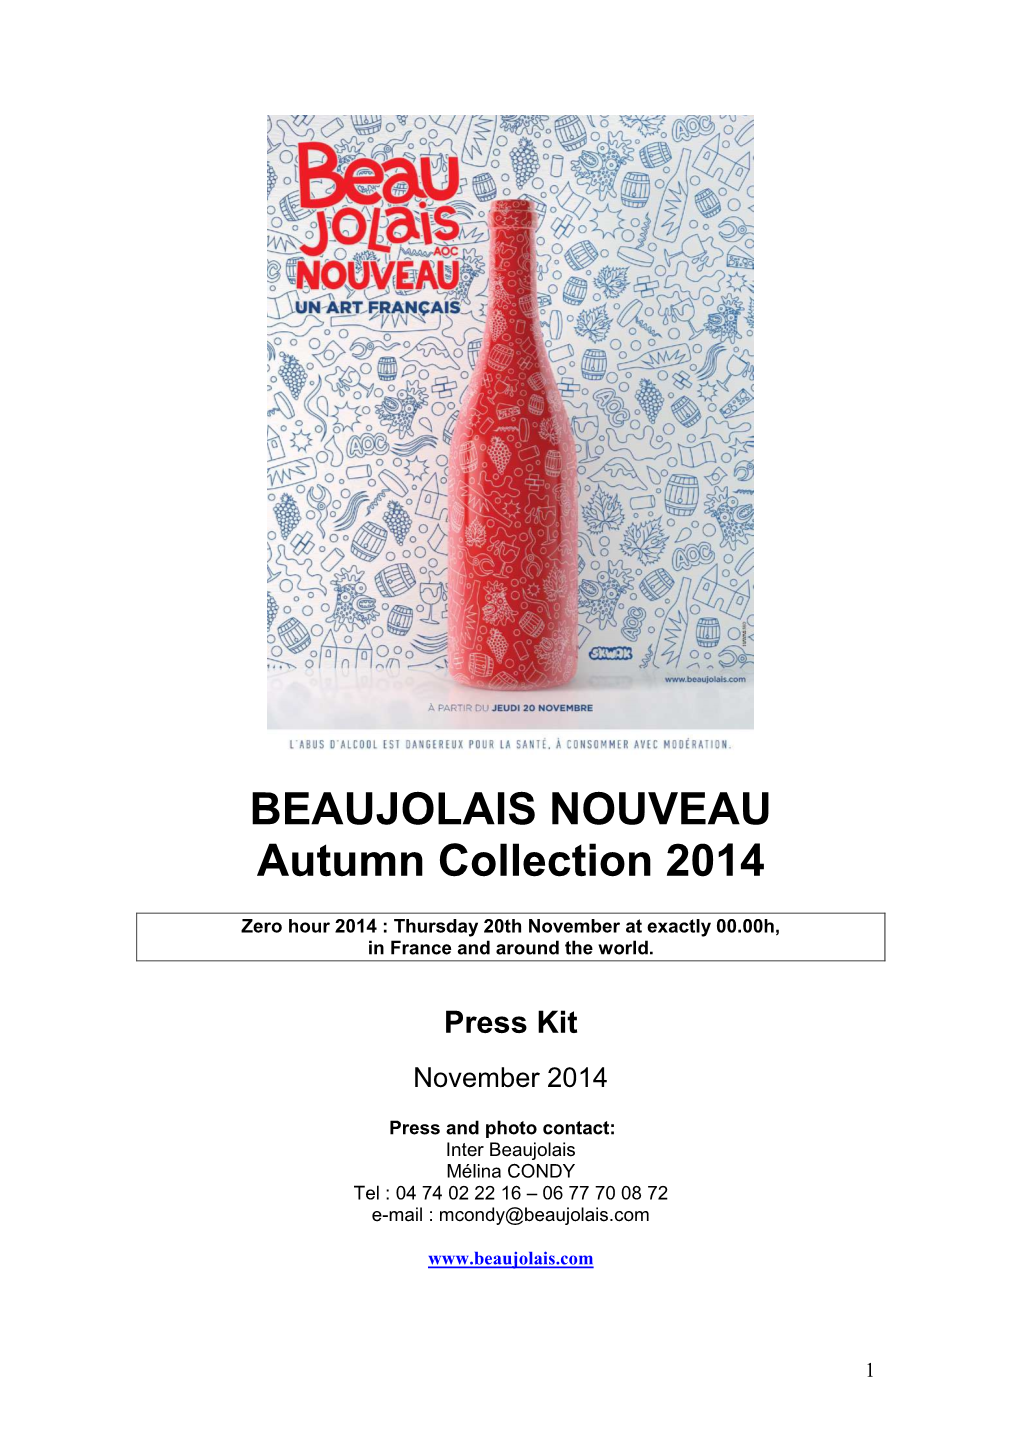 BEAUJOLAIS NOUVEAU Autumn Collection 2014